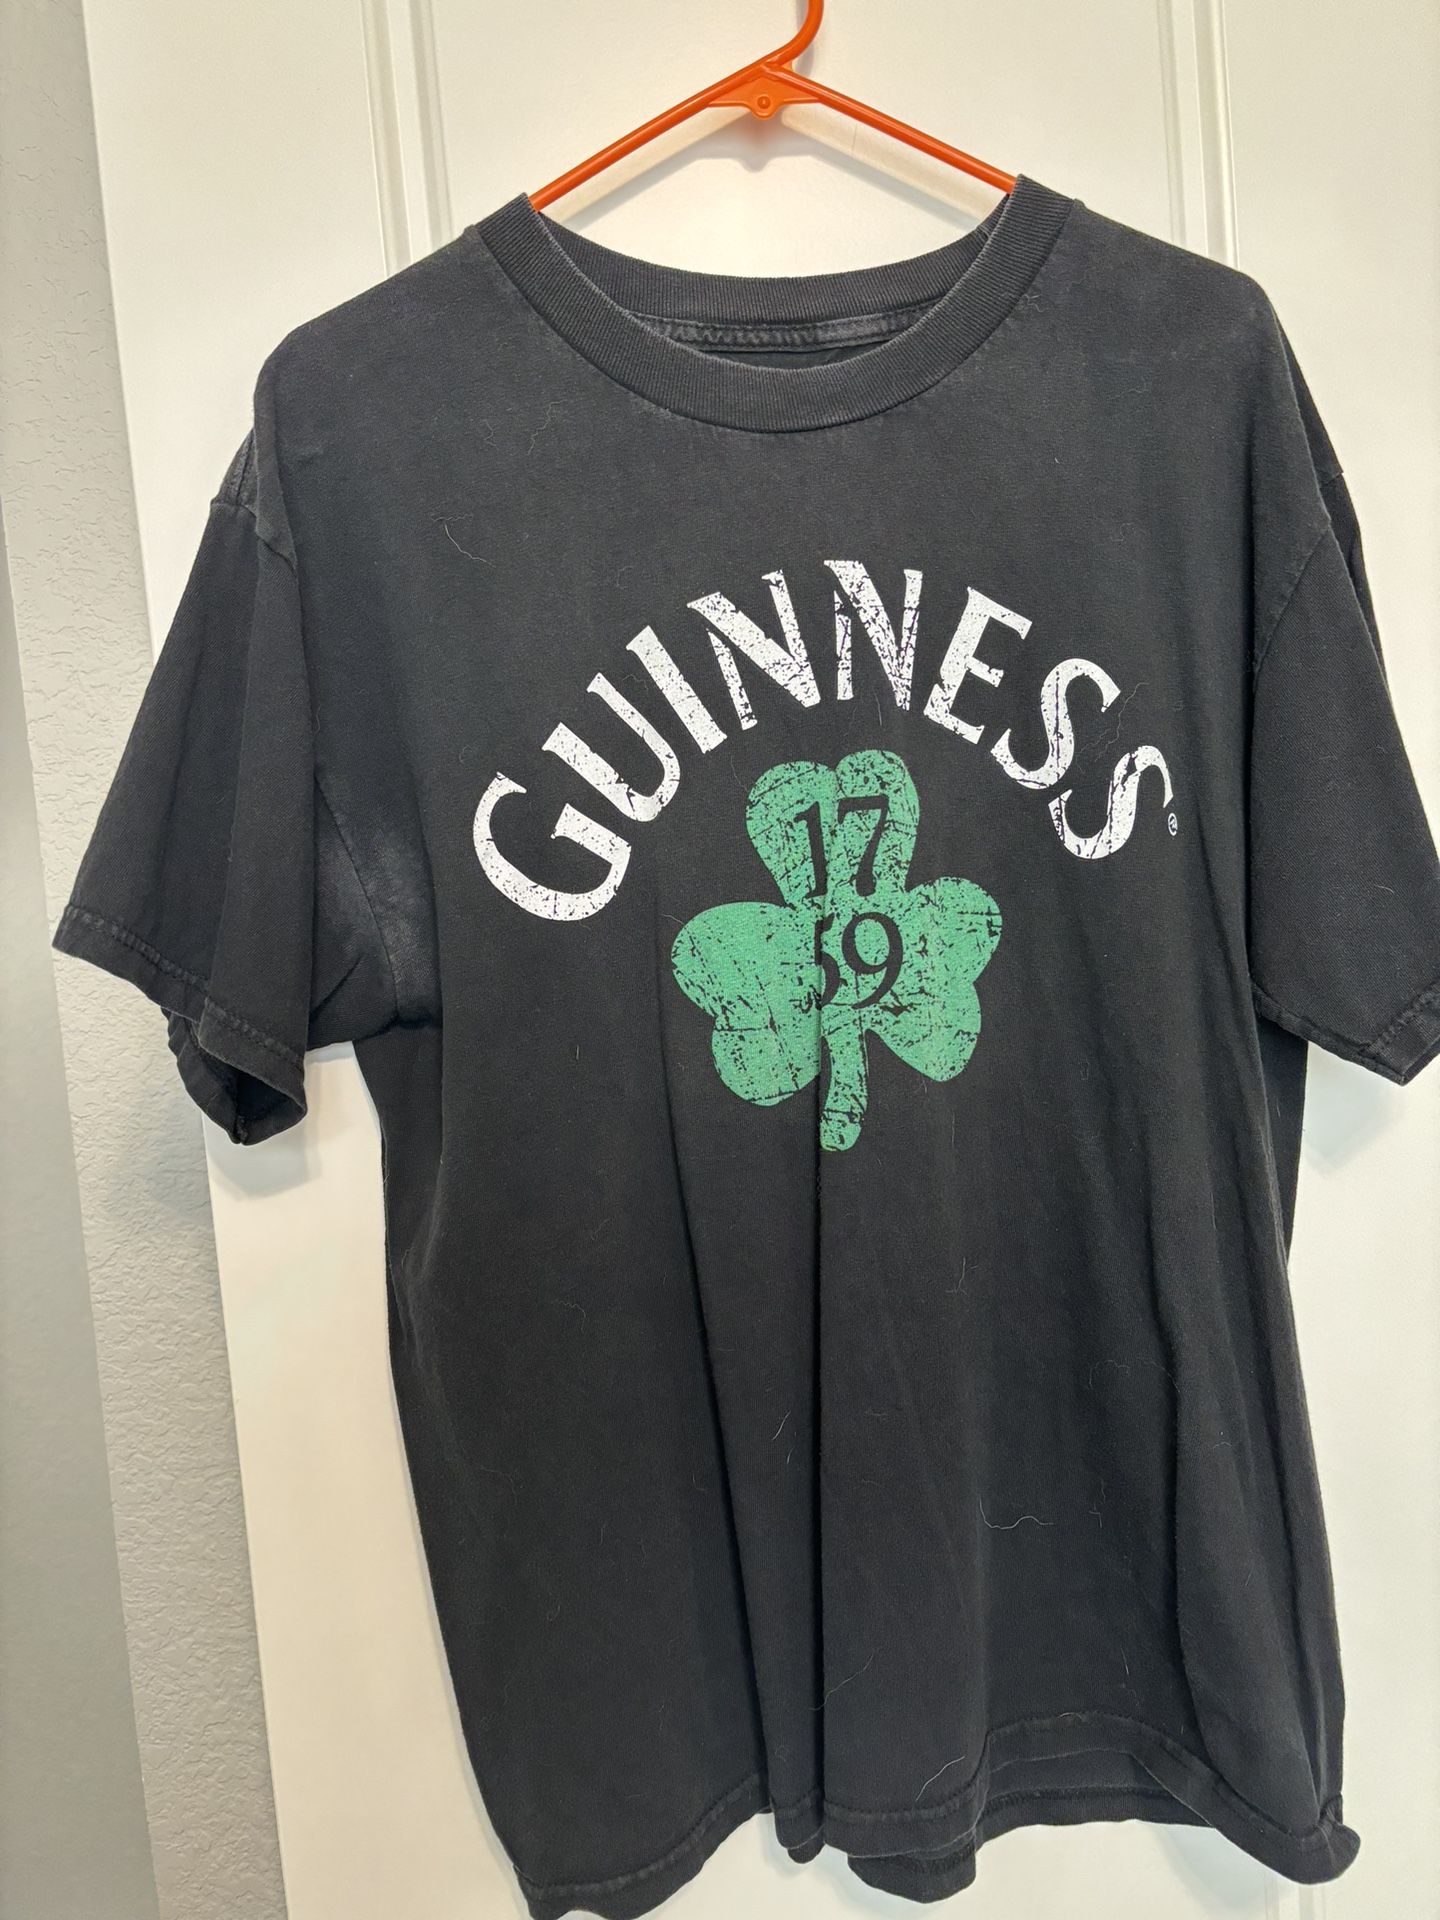 Guinness St Pats Shirt 